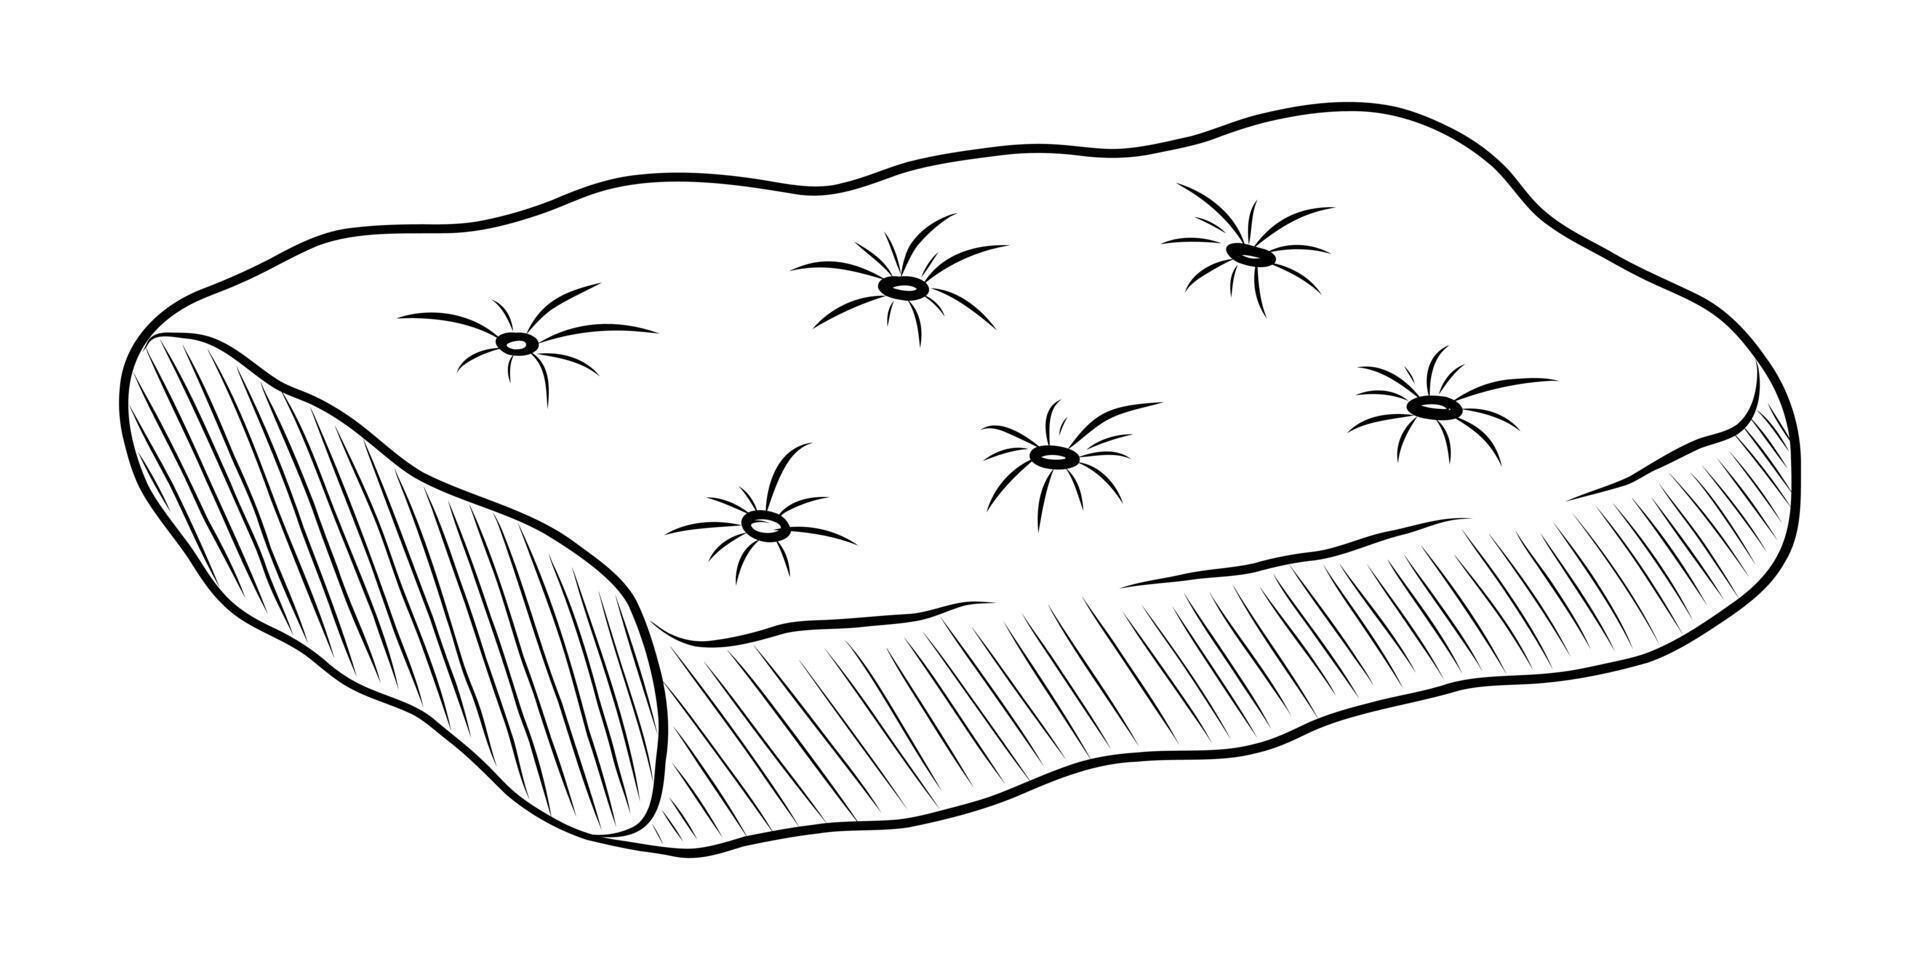 Preto e branco vetor desenhando do uma cama para uma animal